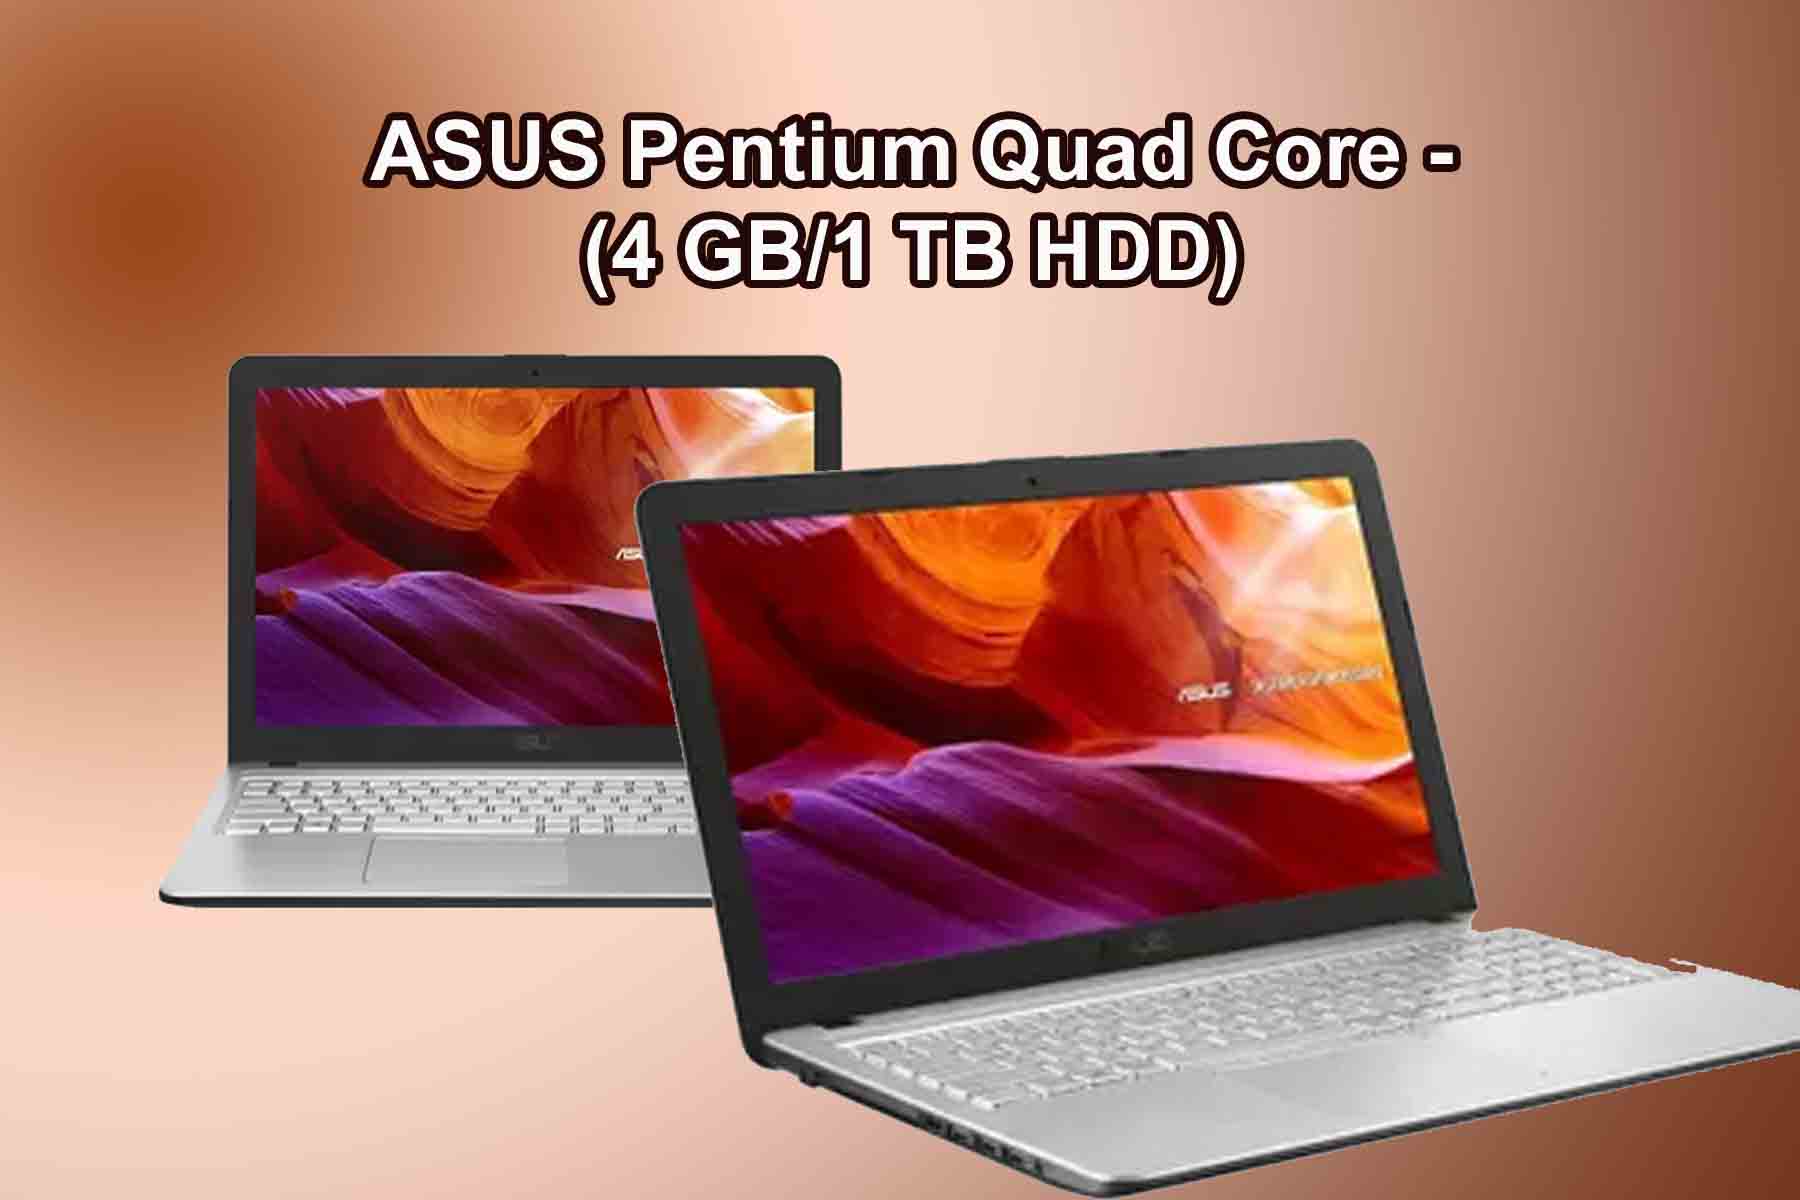 ASUS Pentium Quad Core